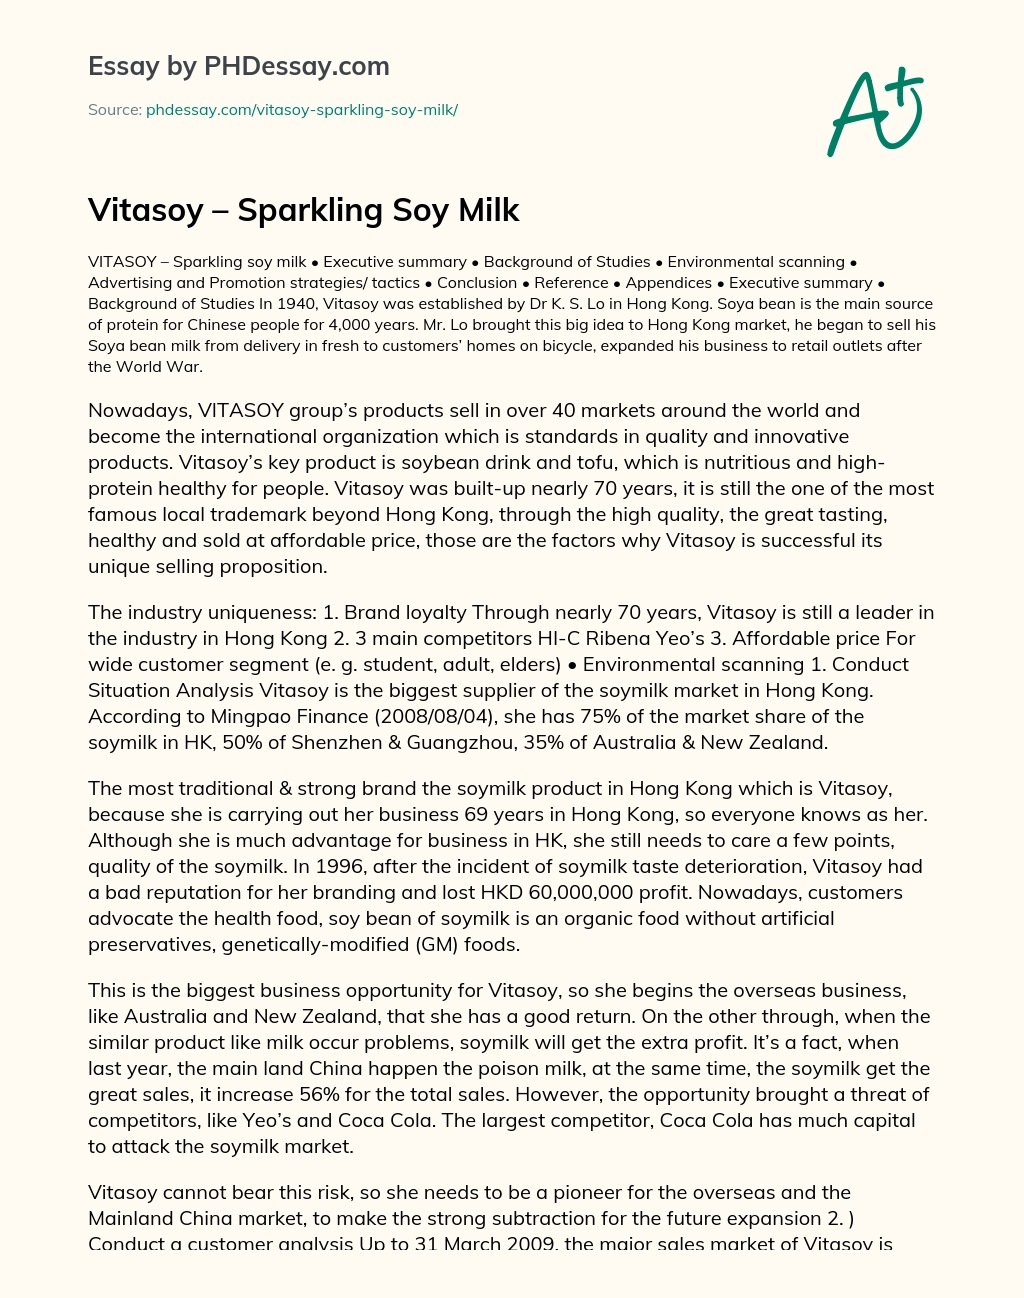 Vitasoy – Sparkling Soy Milk essay